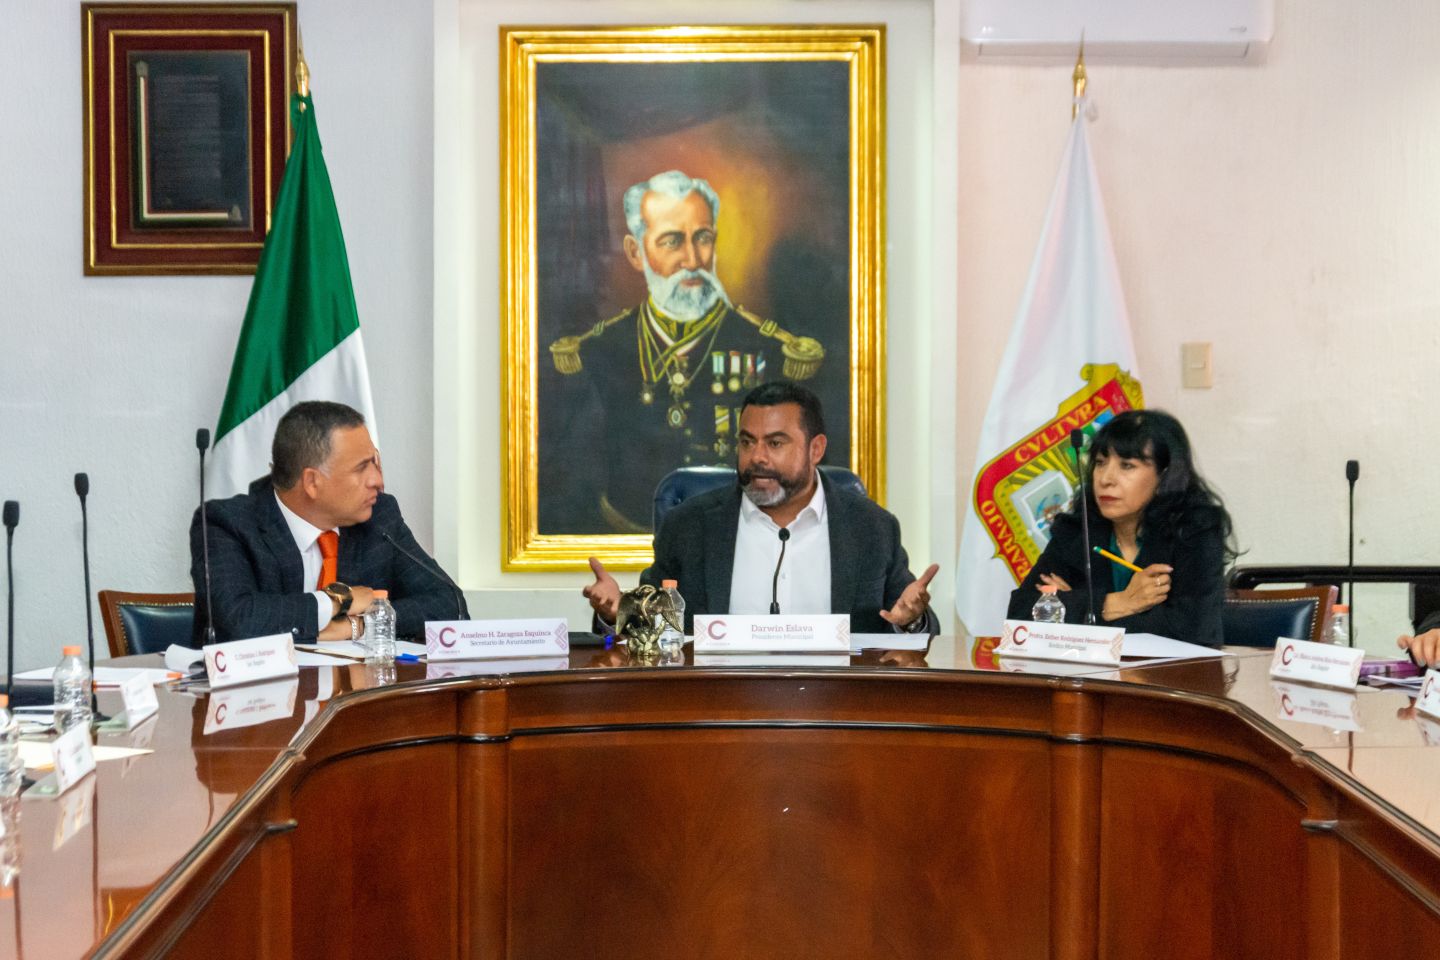 APRUEBA GOBIERNO DE COACALCO BENEFICIOS FISCALES PARA CONTRIBUYENTES INSCRITOS EN IMEVIS